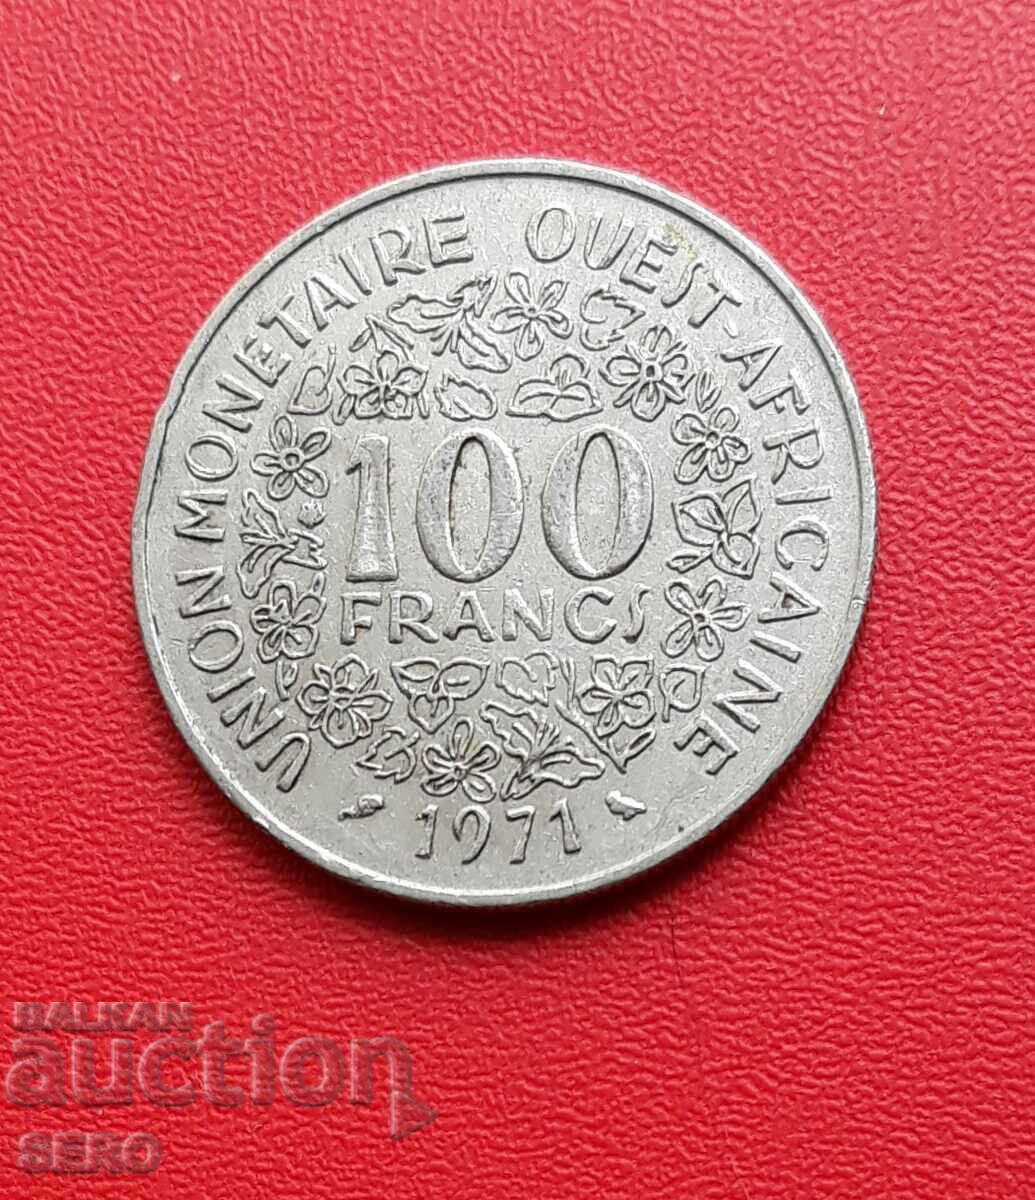 Africa de Vest Franceză - 100 de franci 1971